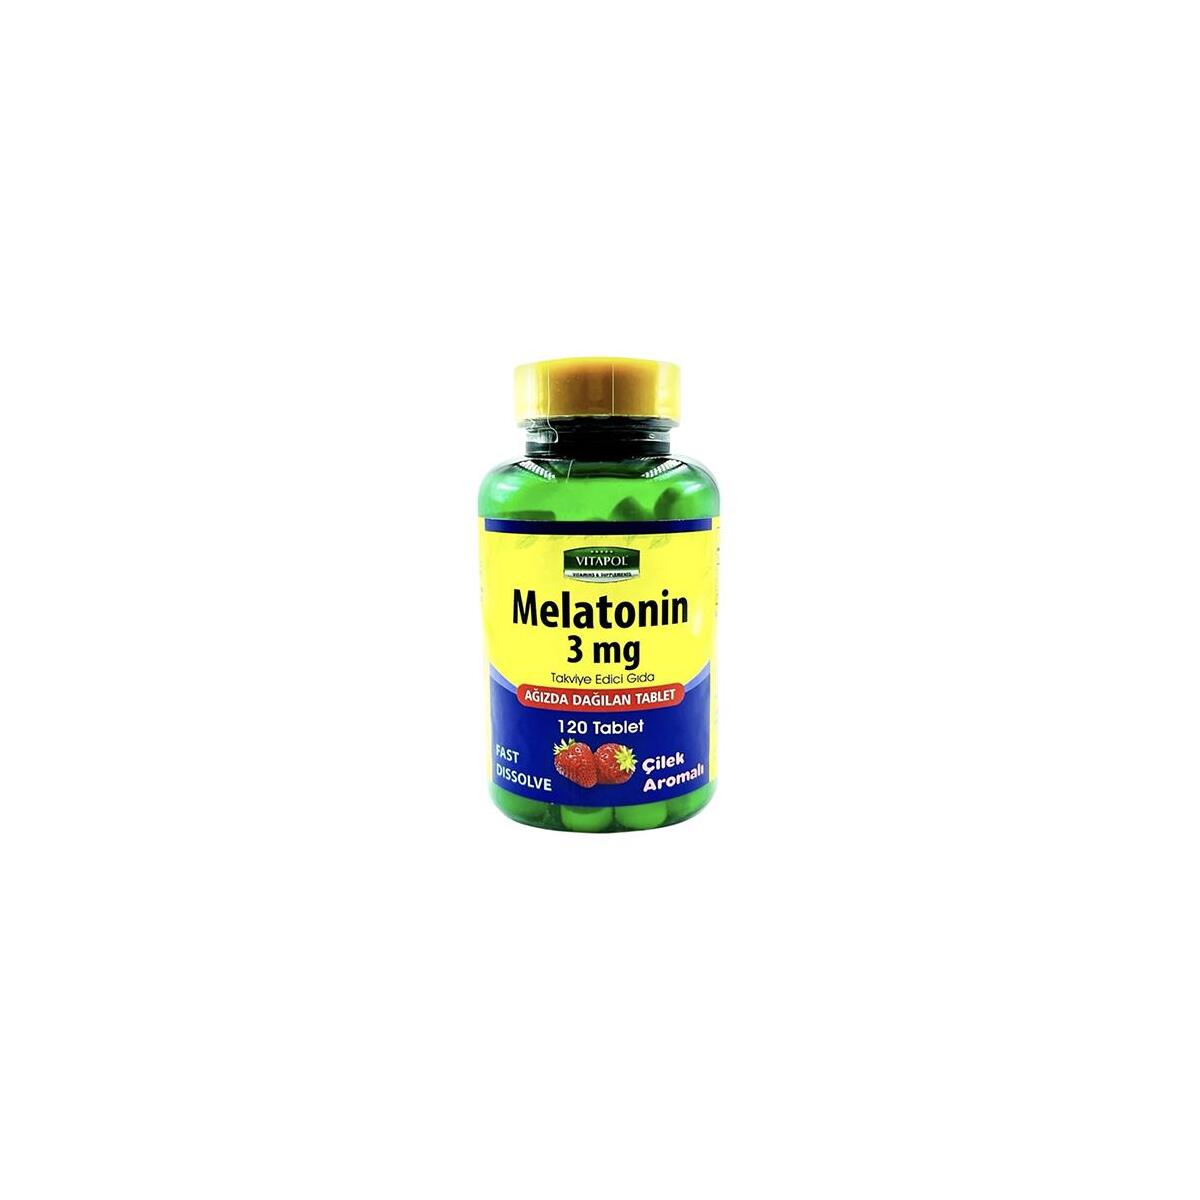 Vitapol Melatonin 3 Mg Ağızda Dağılan 120 Tablet Çilek Aromalı